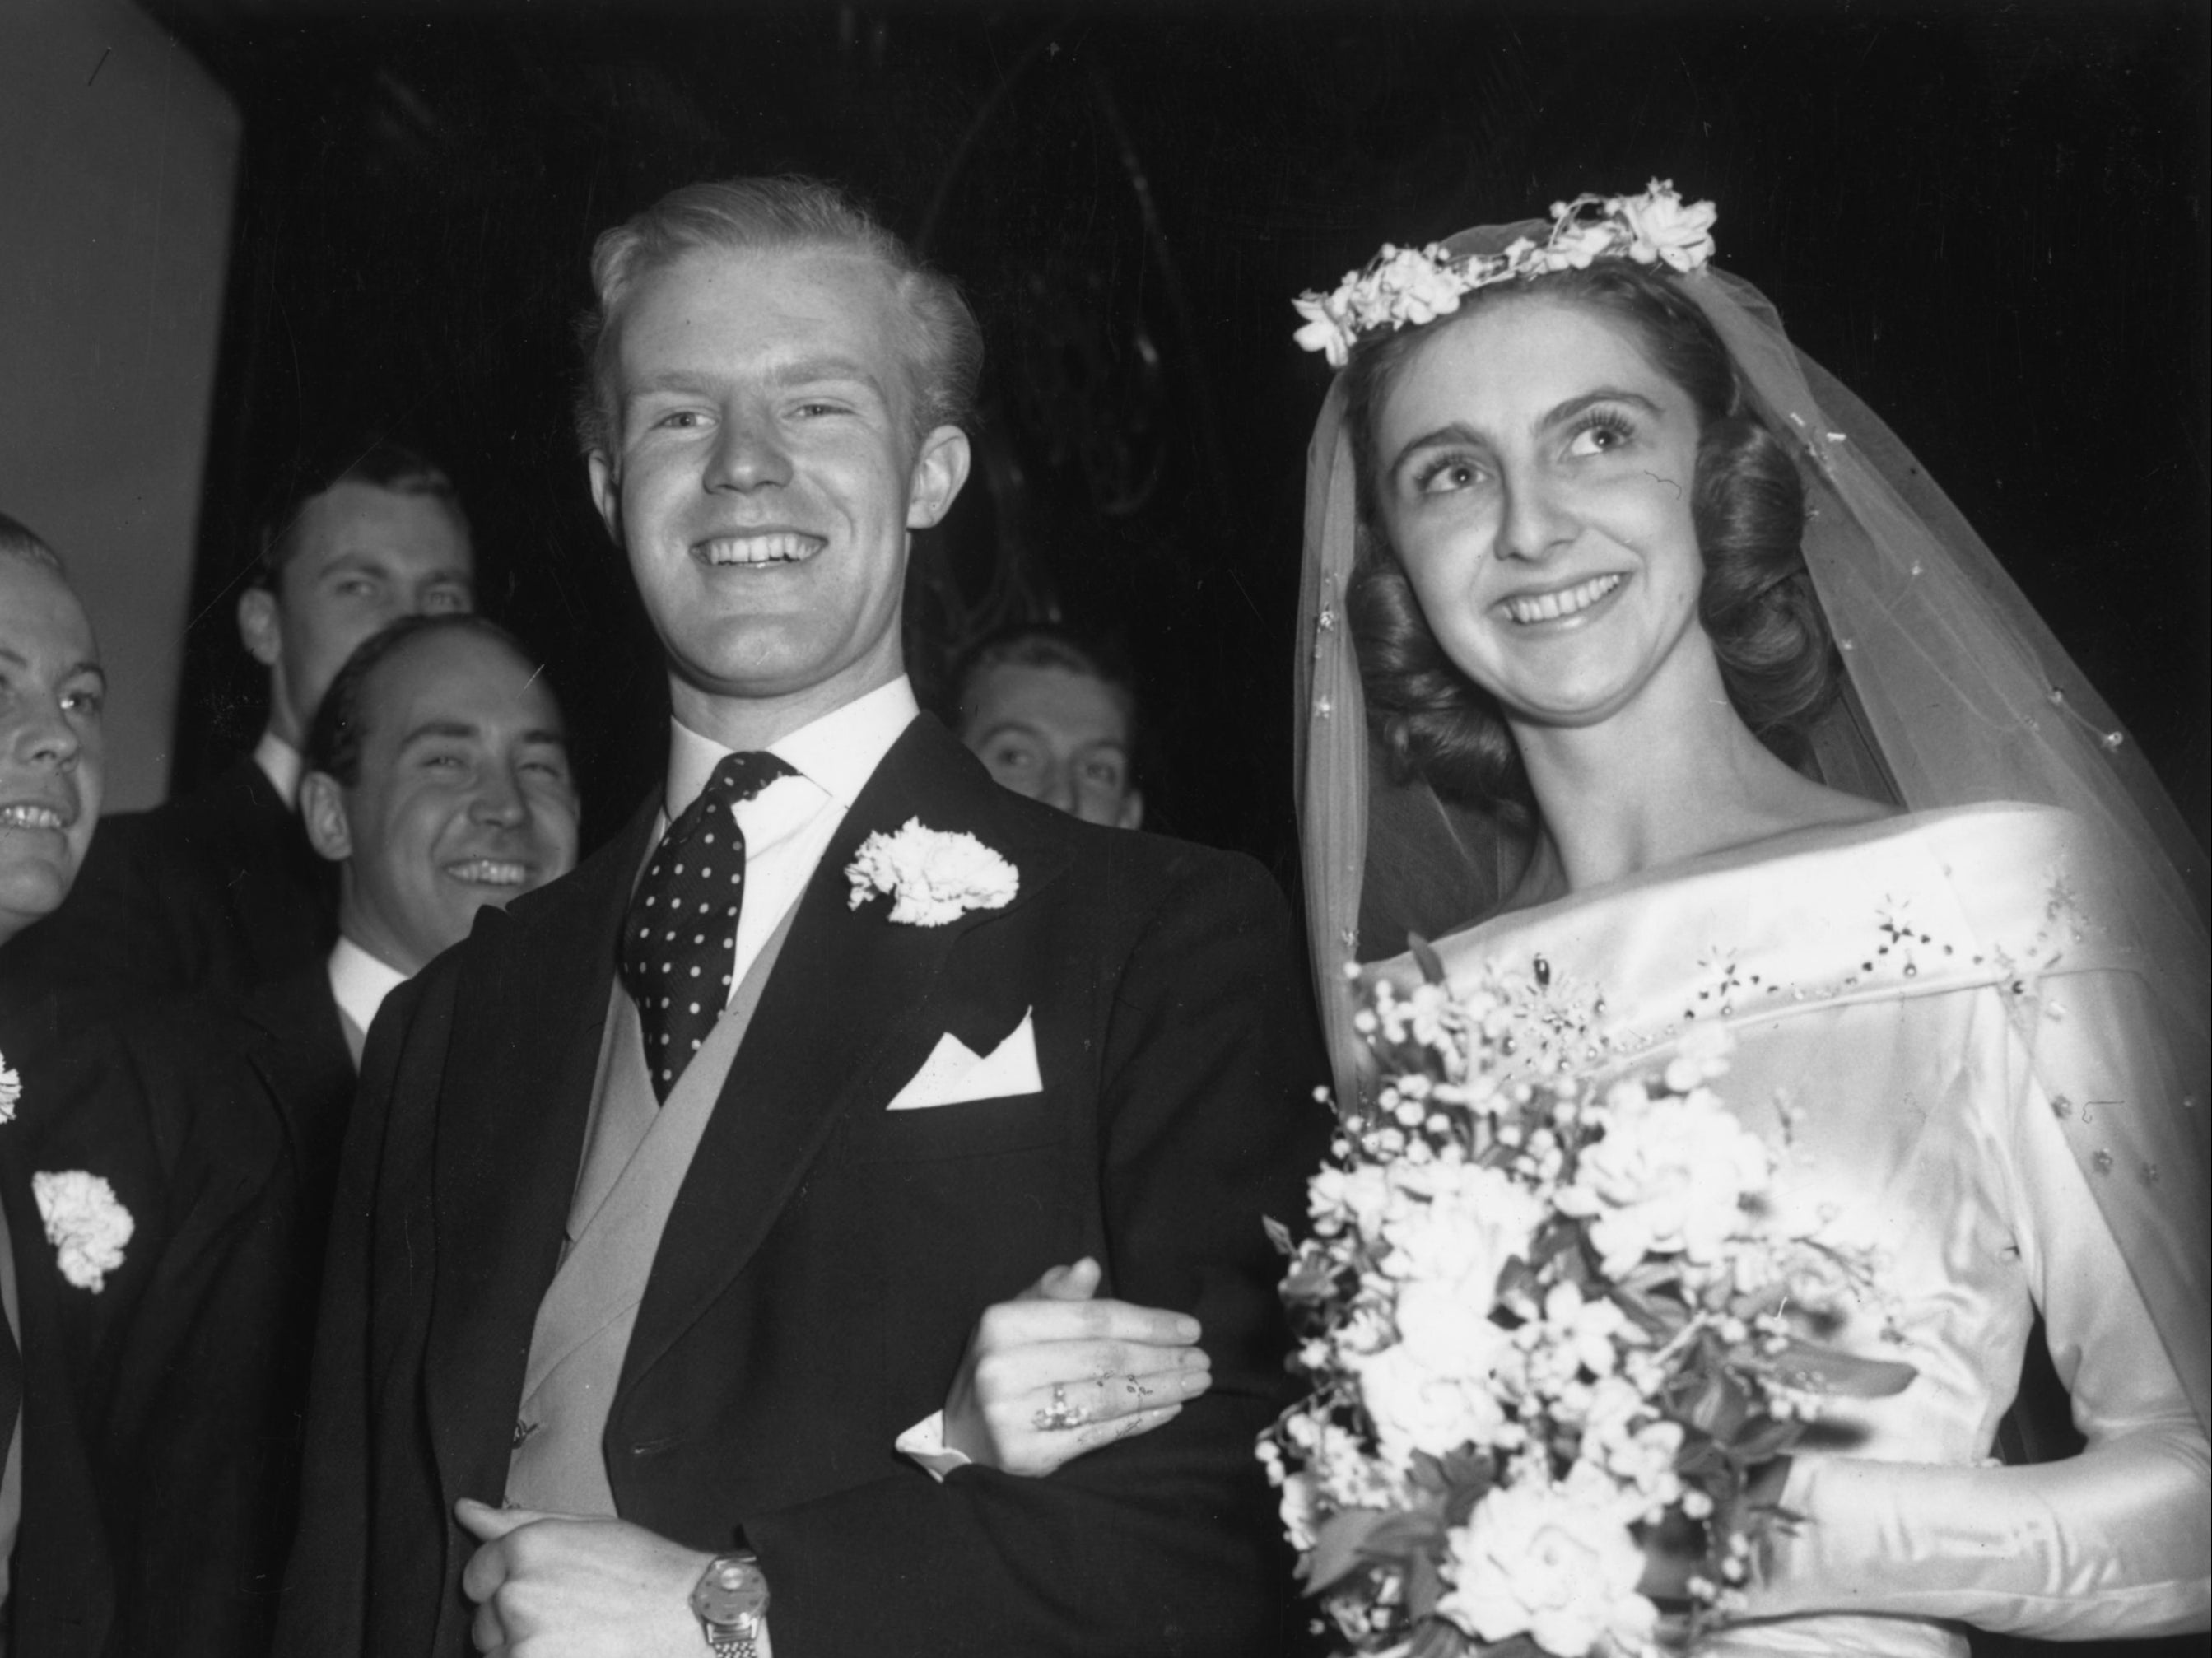 Jane Sheffield marries Jocelyn Stevens in June 1956